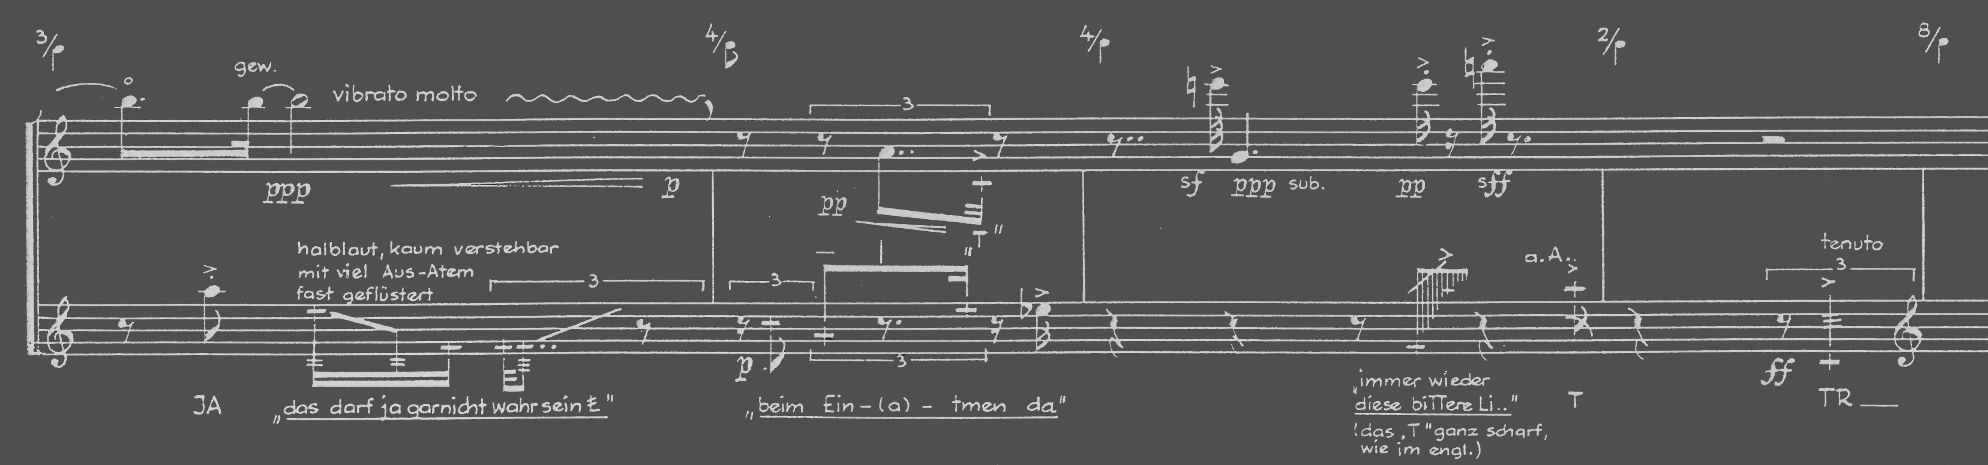 Helmut Lachenmanns "temA" für Flöte, Stimme (Mezzosopran) und Violoncello (1968)